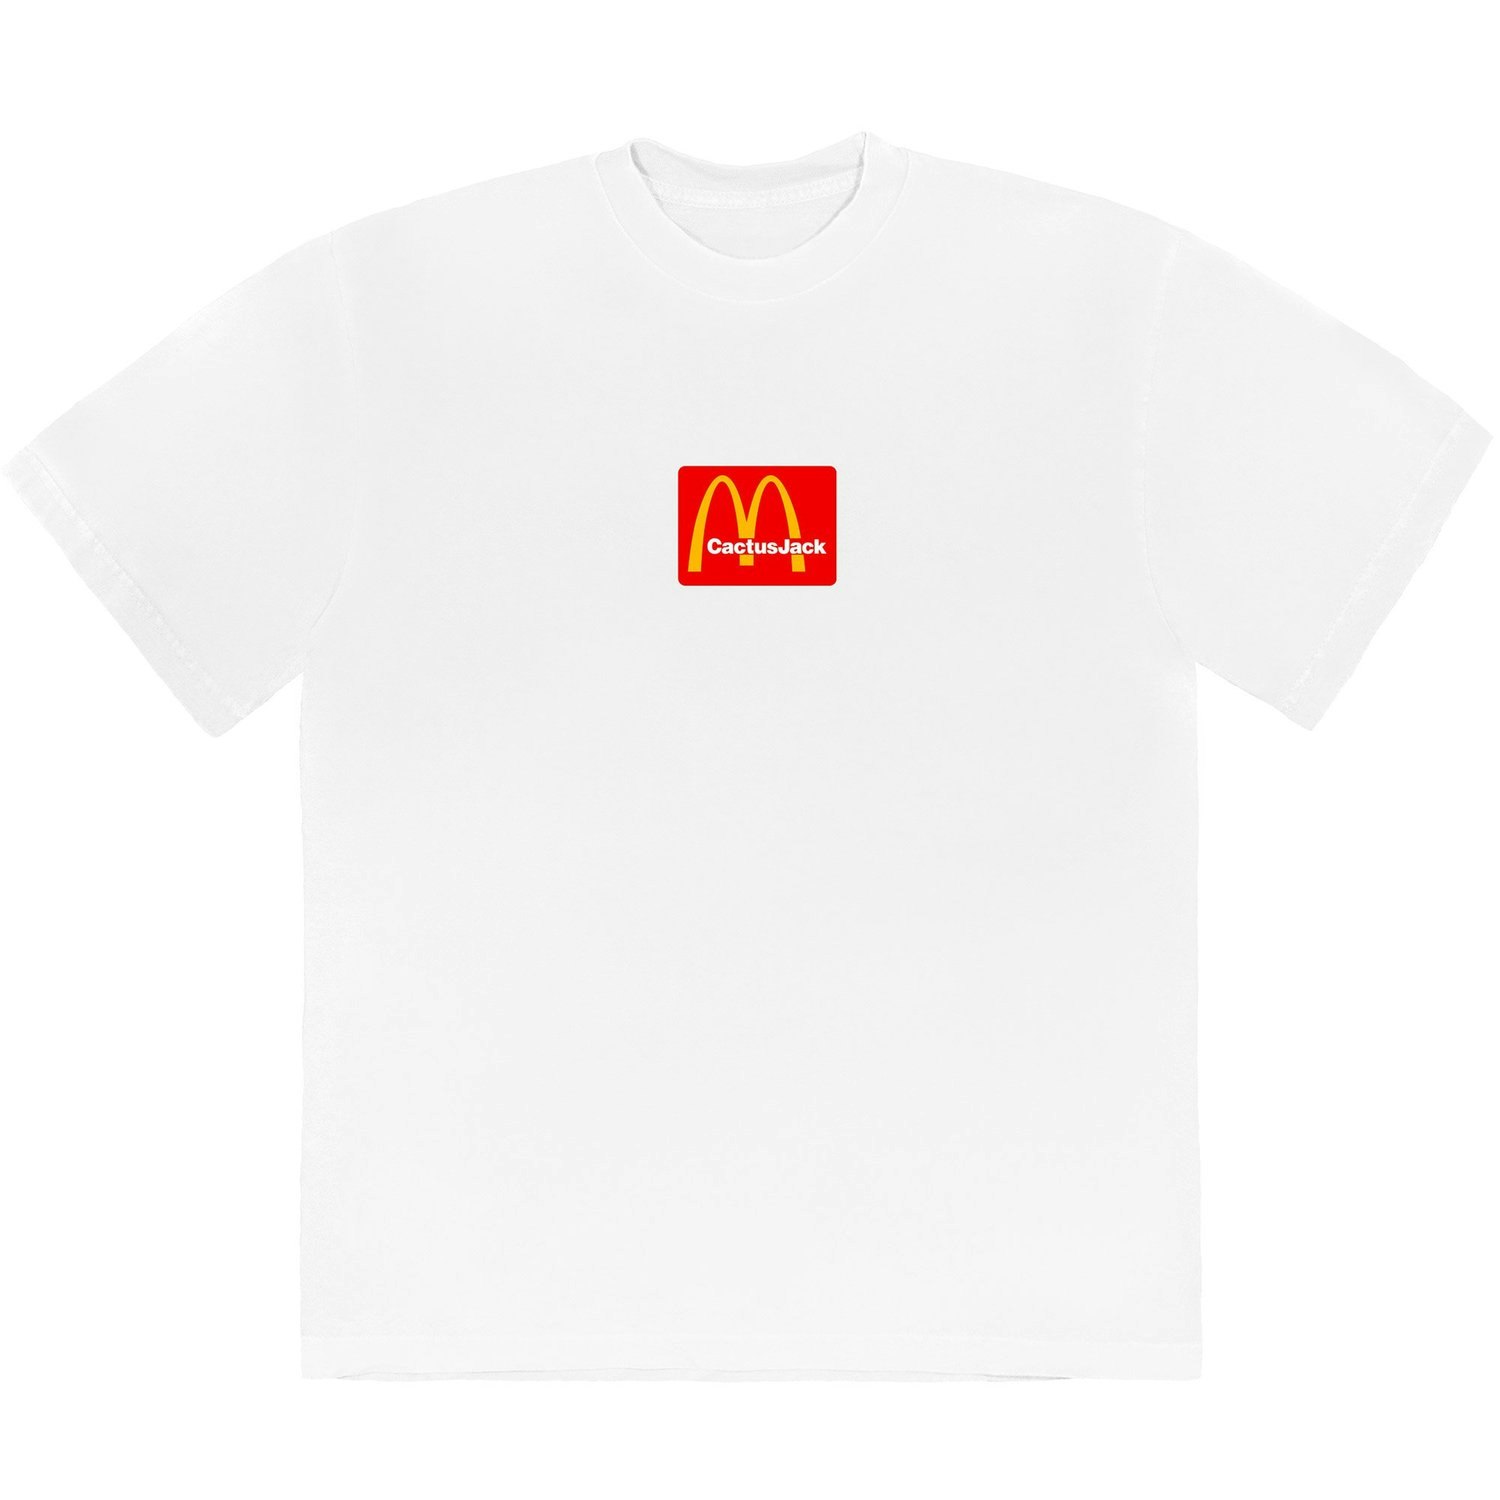 Travis Scott x McDonald's Sesame T-Shirt White - FW20